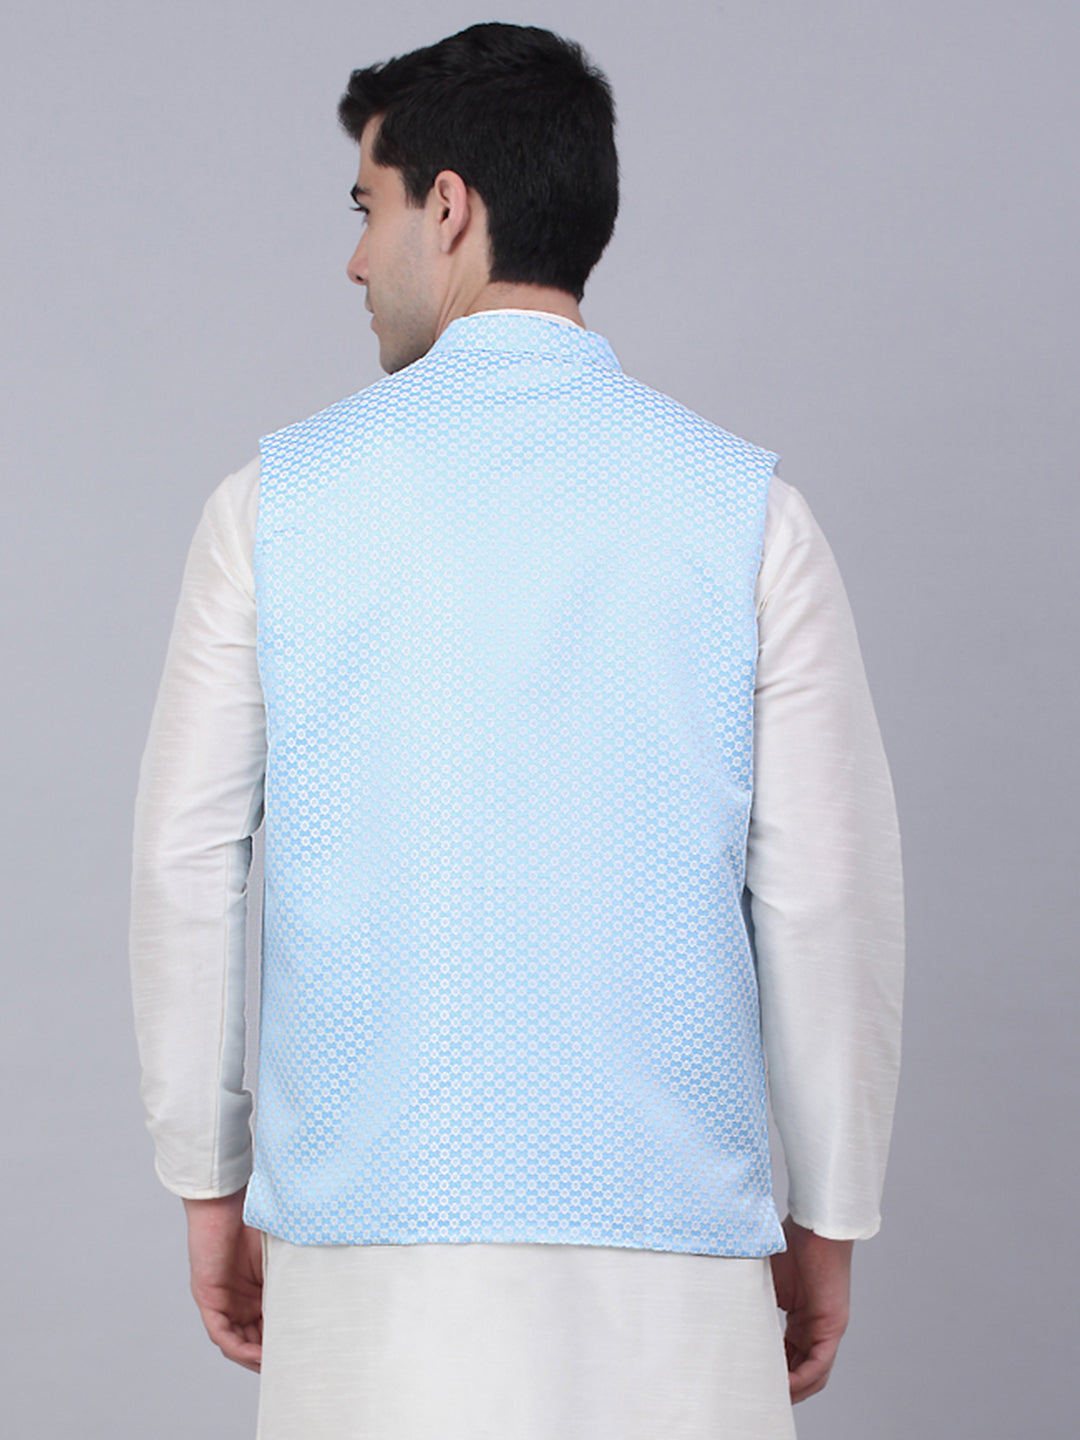 Men's Blue Woven Design Waistcoats ( JOWC 4066Blue )